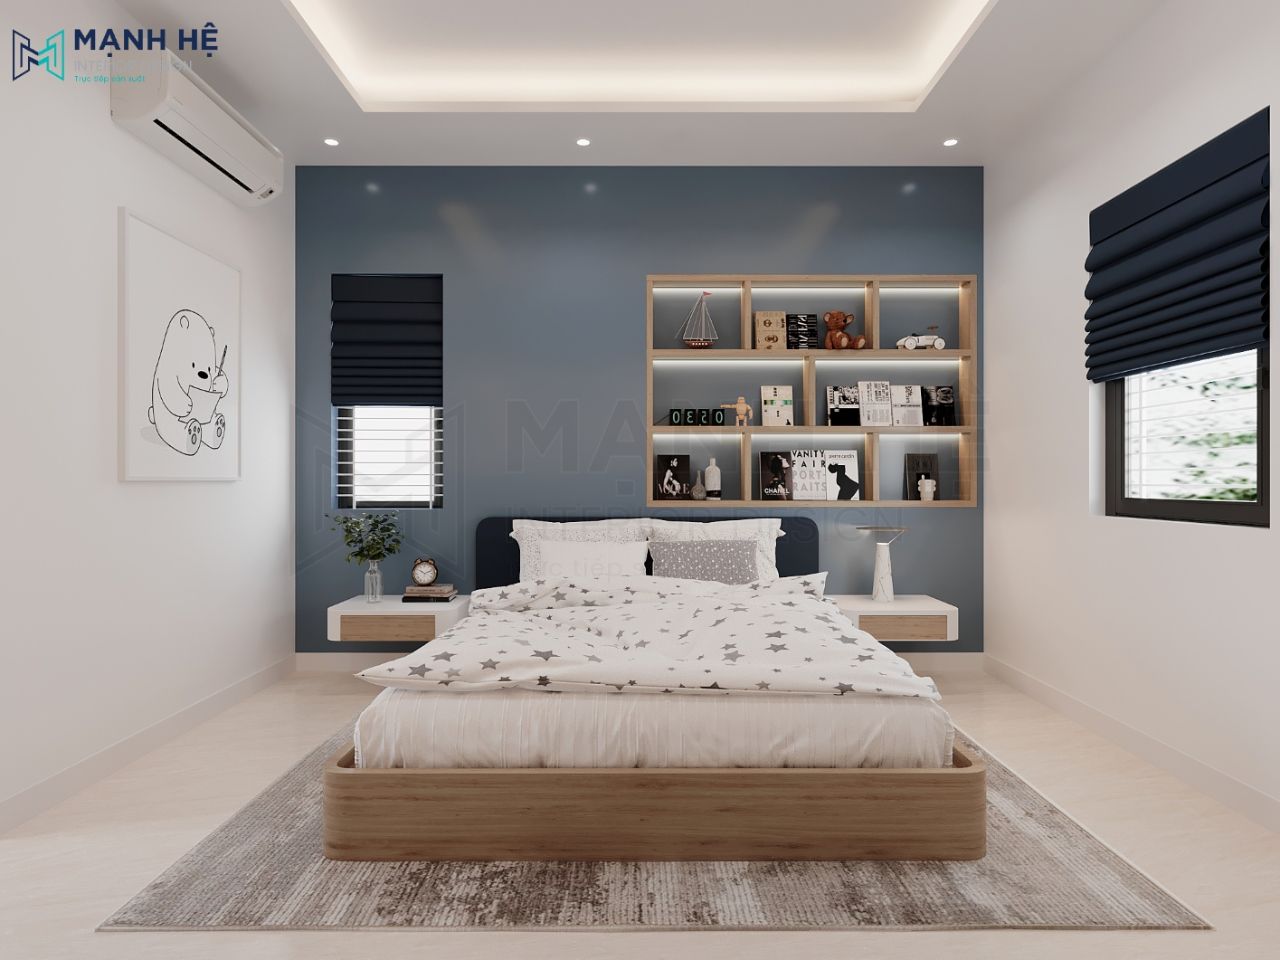 Giường ngủ lớn kết hợp kệ sách và trang trí treo tường đầu giường dễ dàng trang trí theo sở thích riêng